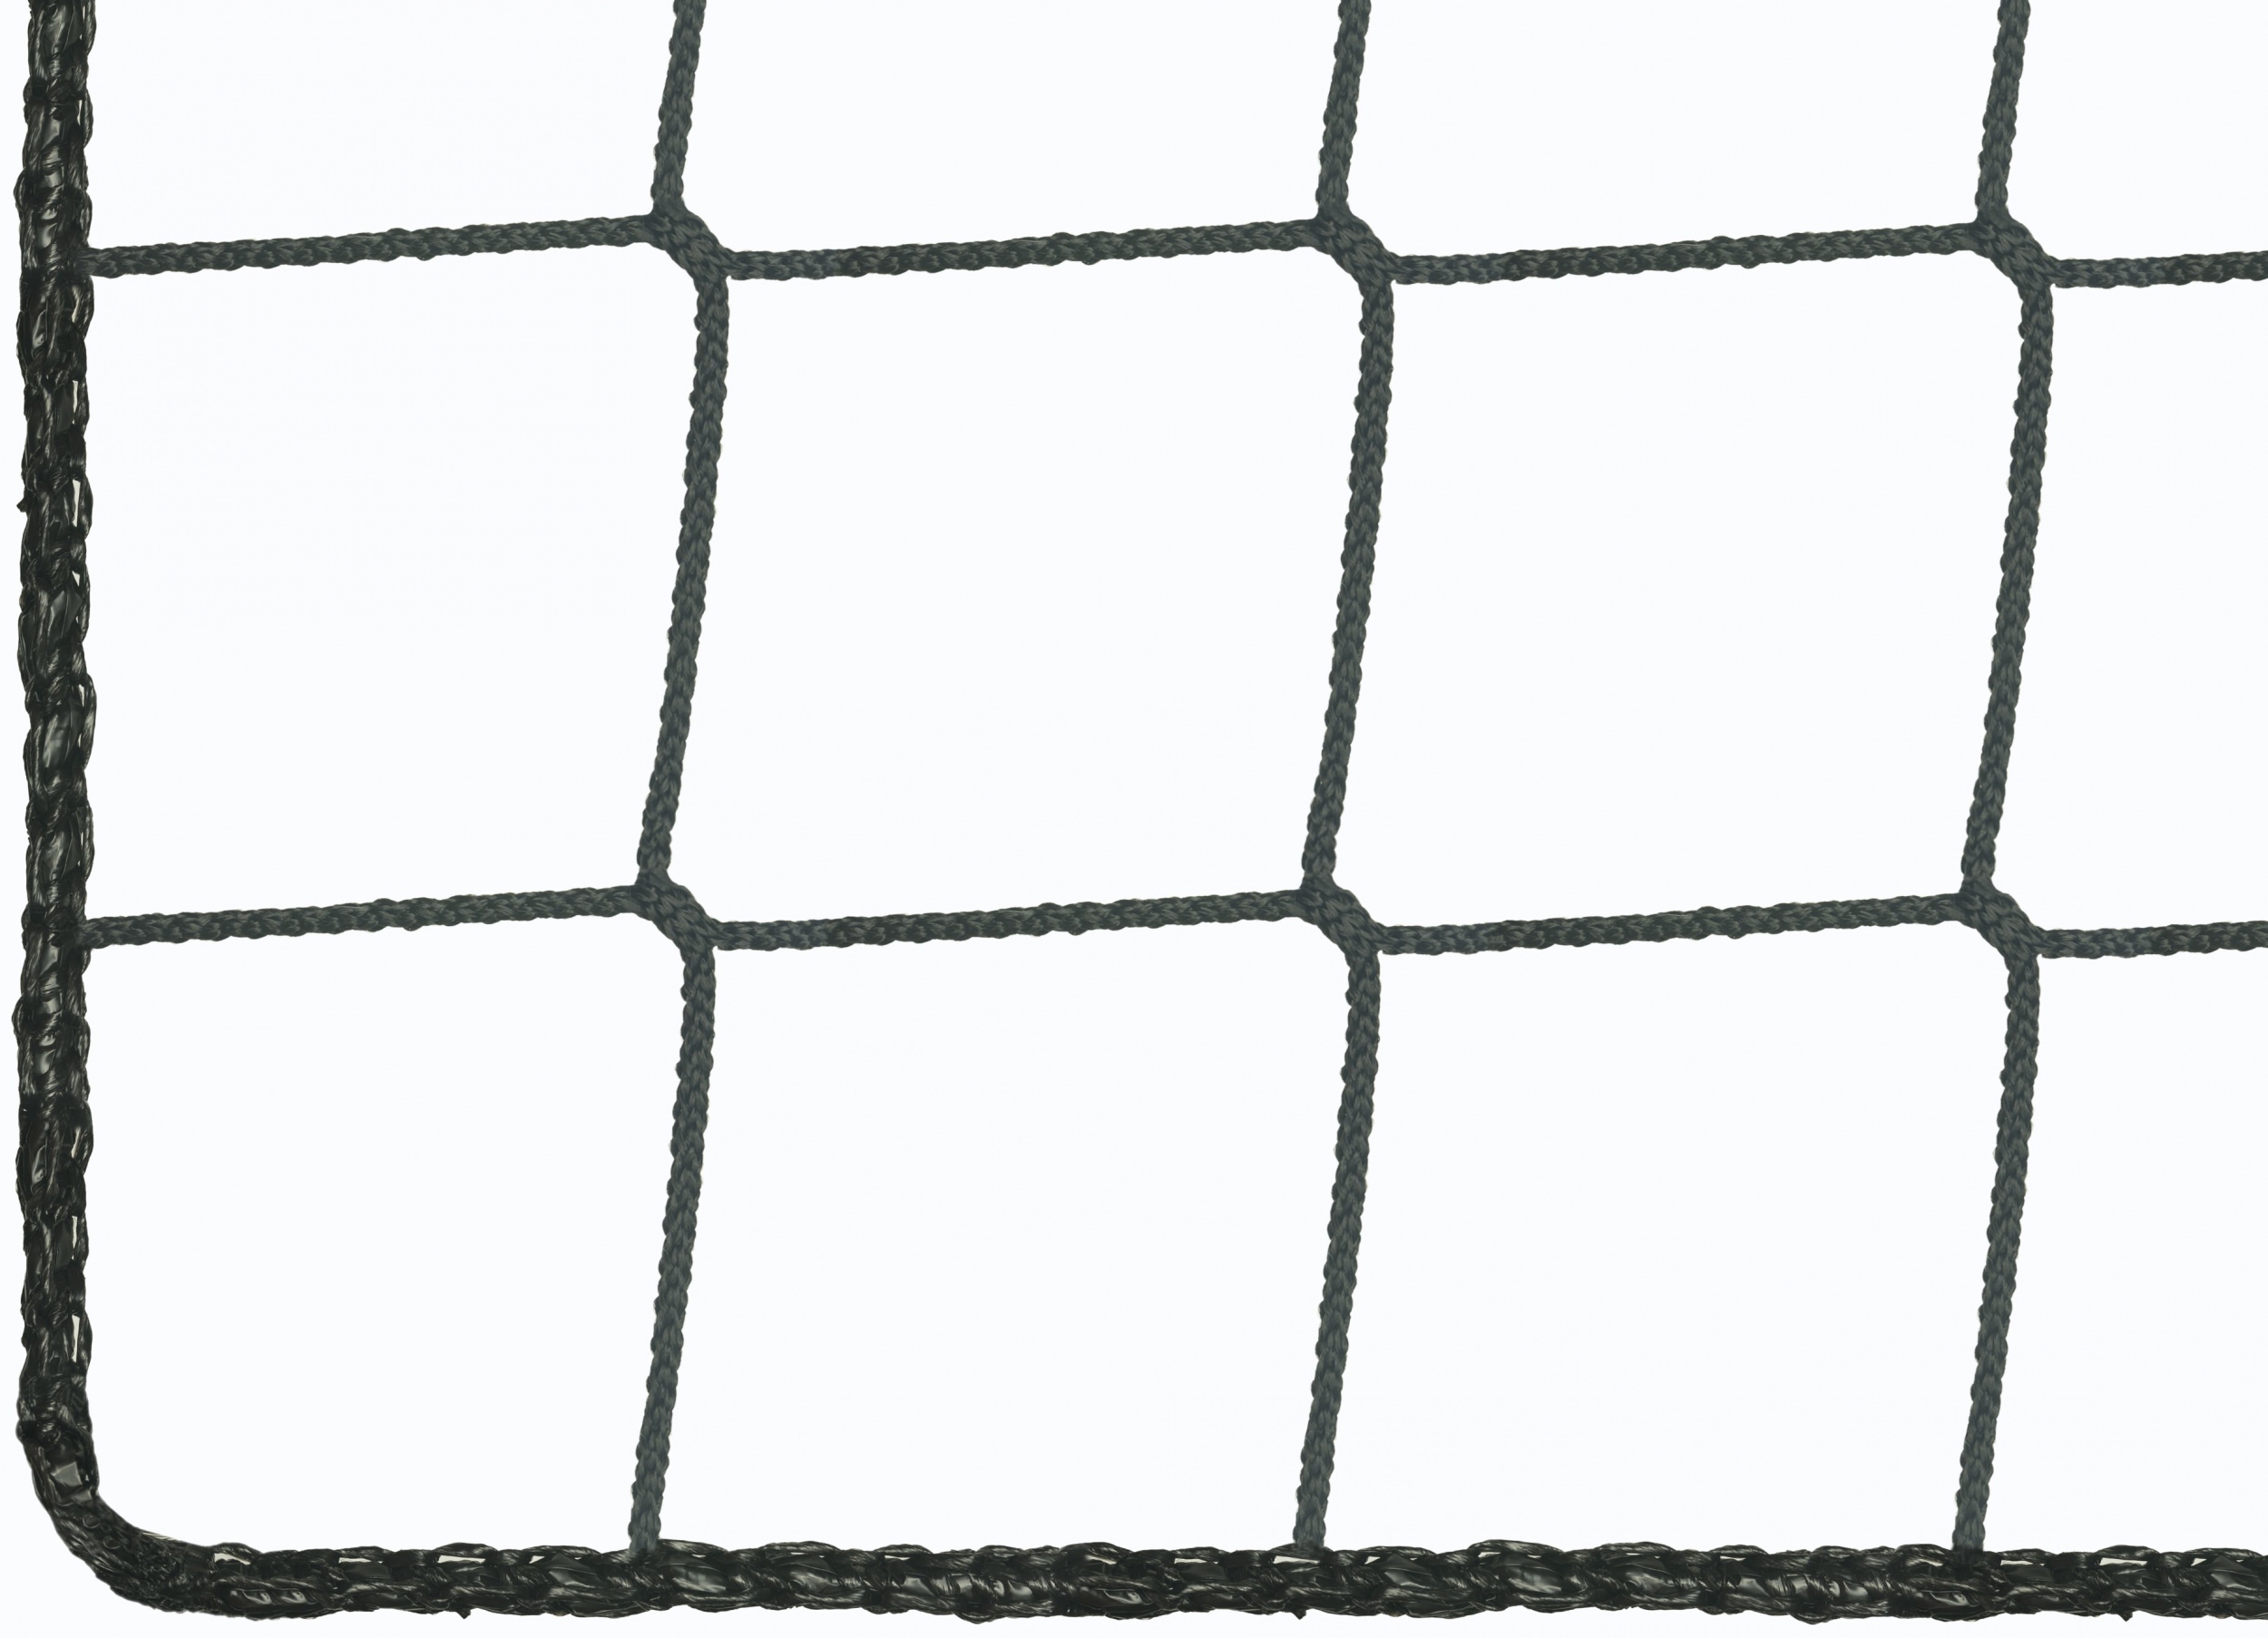 Fangnetz für Indoor-Fußball per m² (nach Maß)